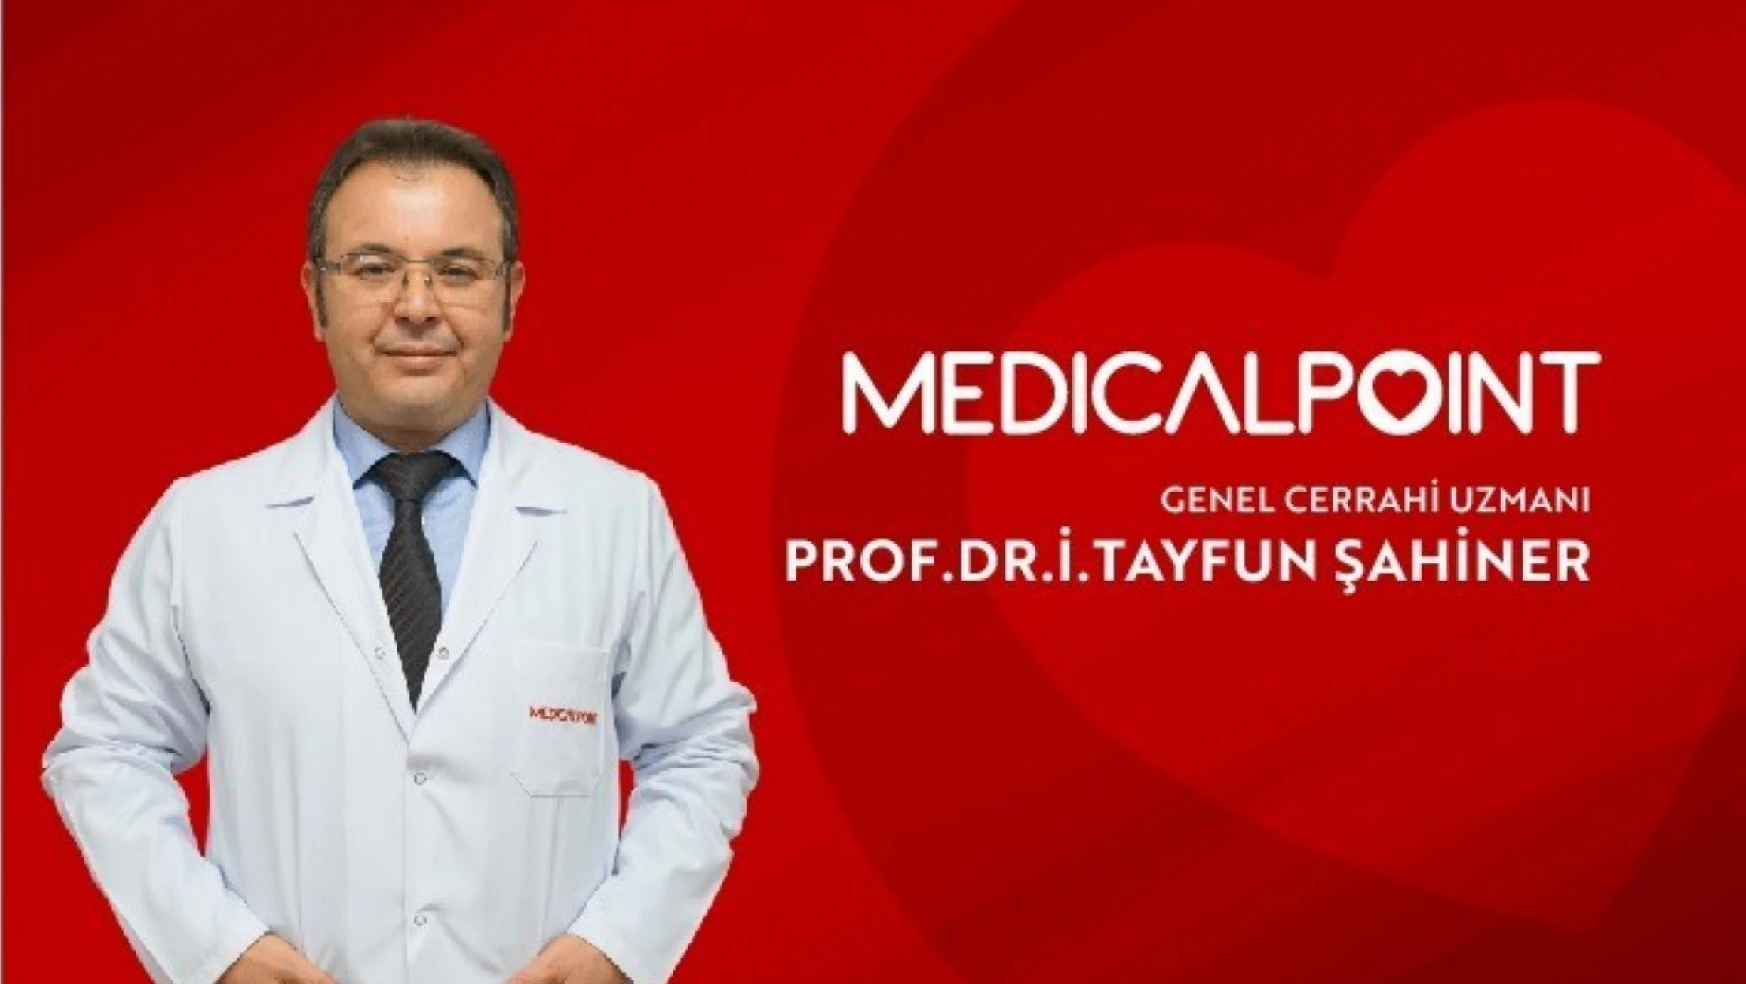 Prof. Dr. Şahiner, Medical Point Gaziantep Hastanesi'nde hasta kabulüne başladı